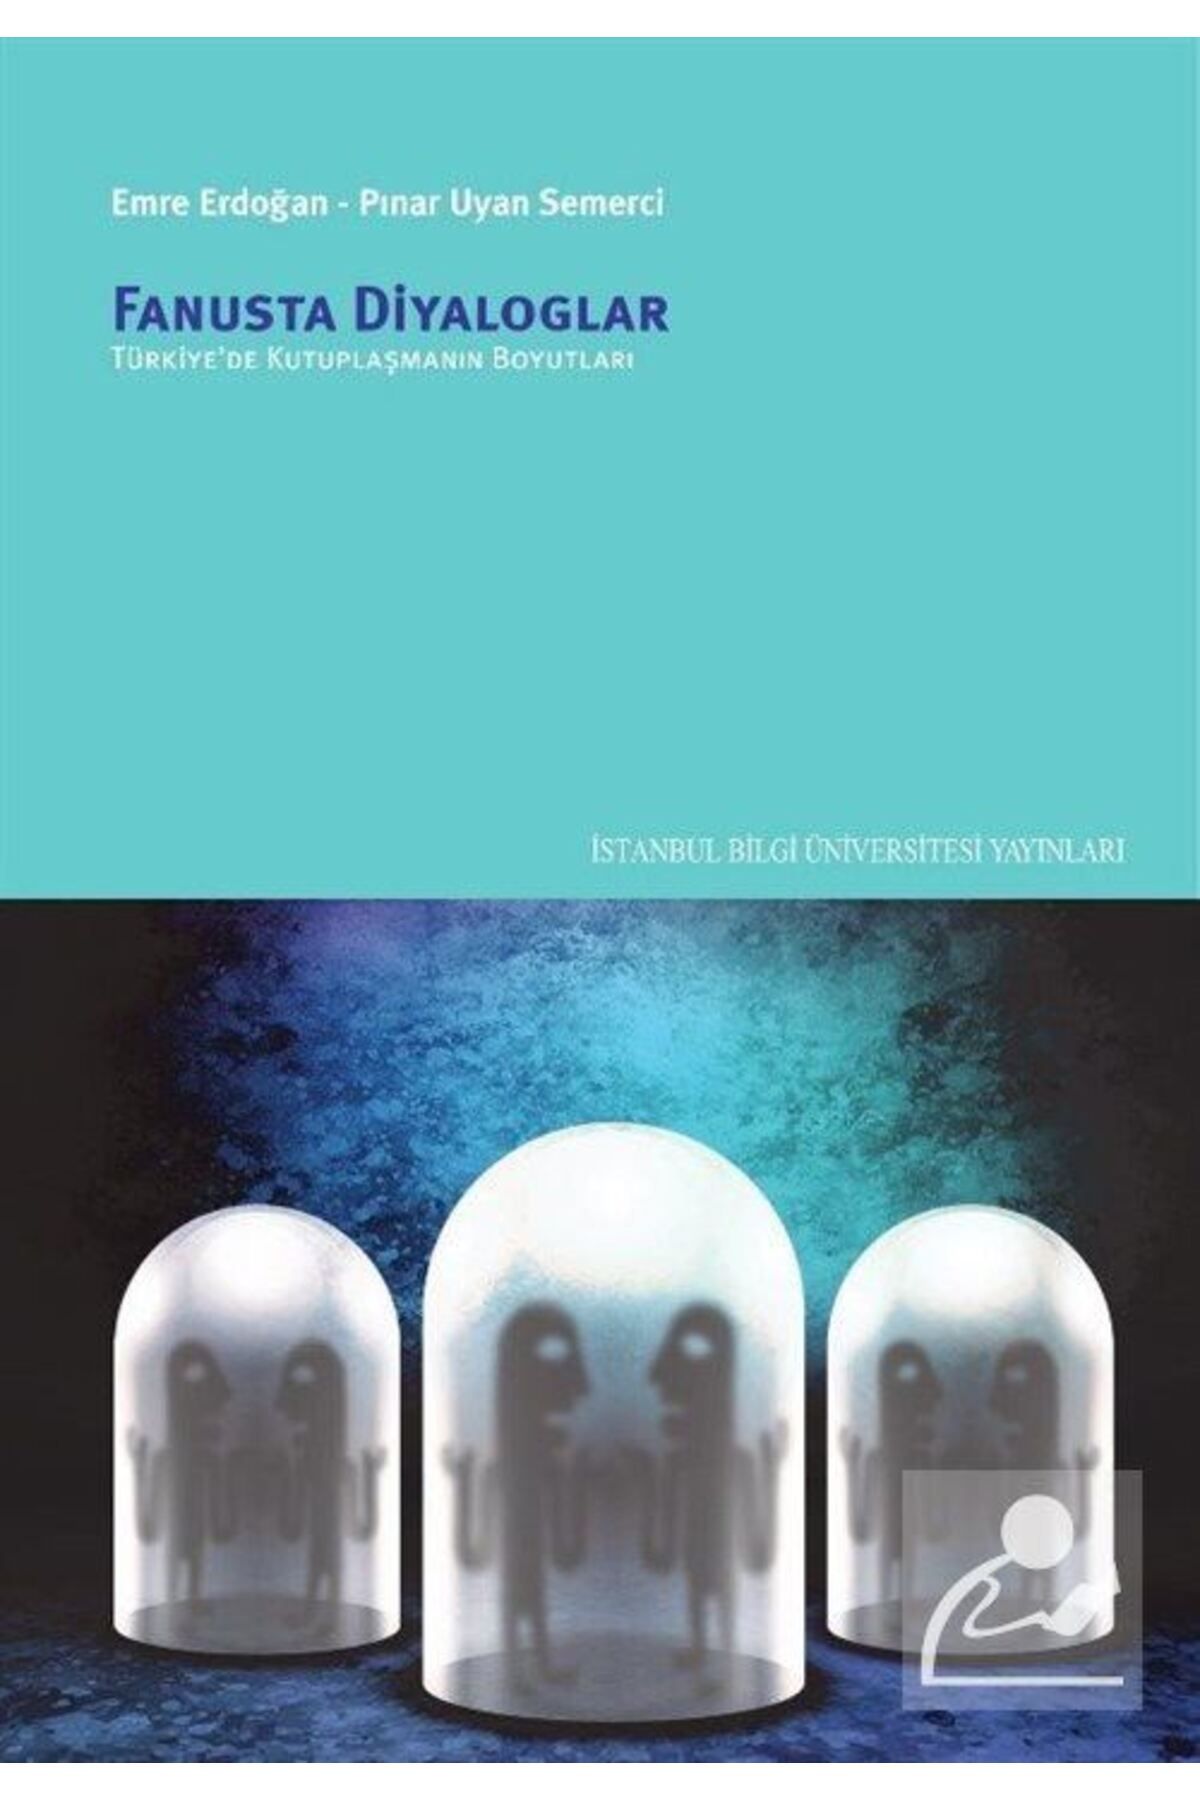 İstanbul Bilgi Üniversitesi Yayınları Fanusta Diyaloglar & Türkiye'de Kutuplaşmanın Boyutları